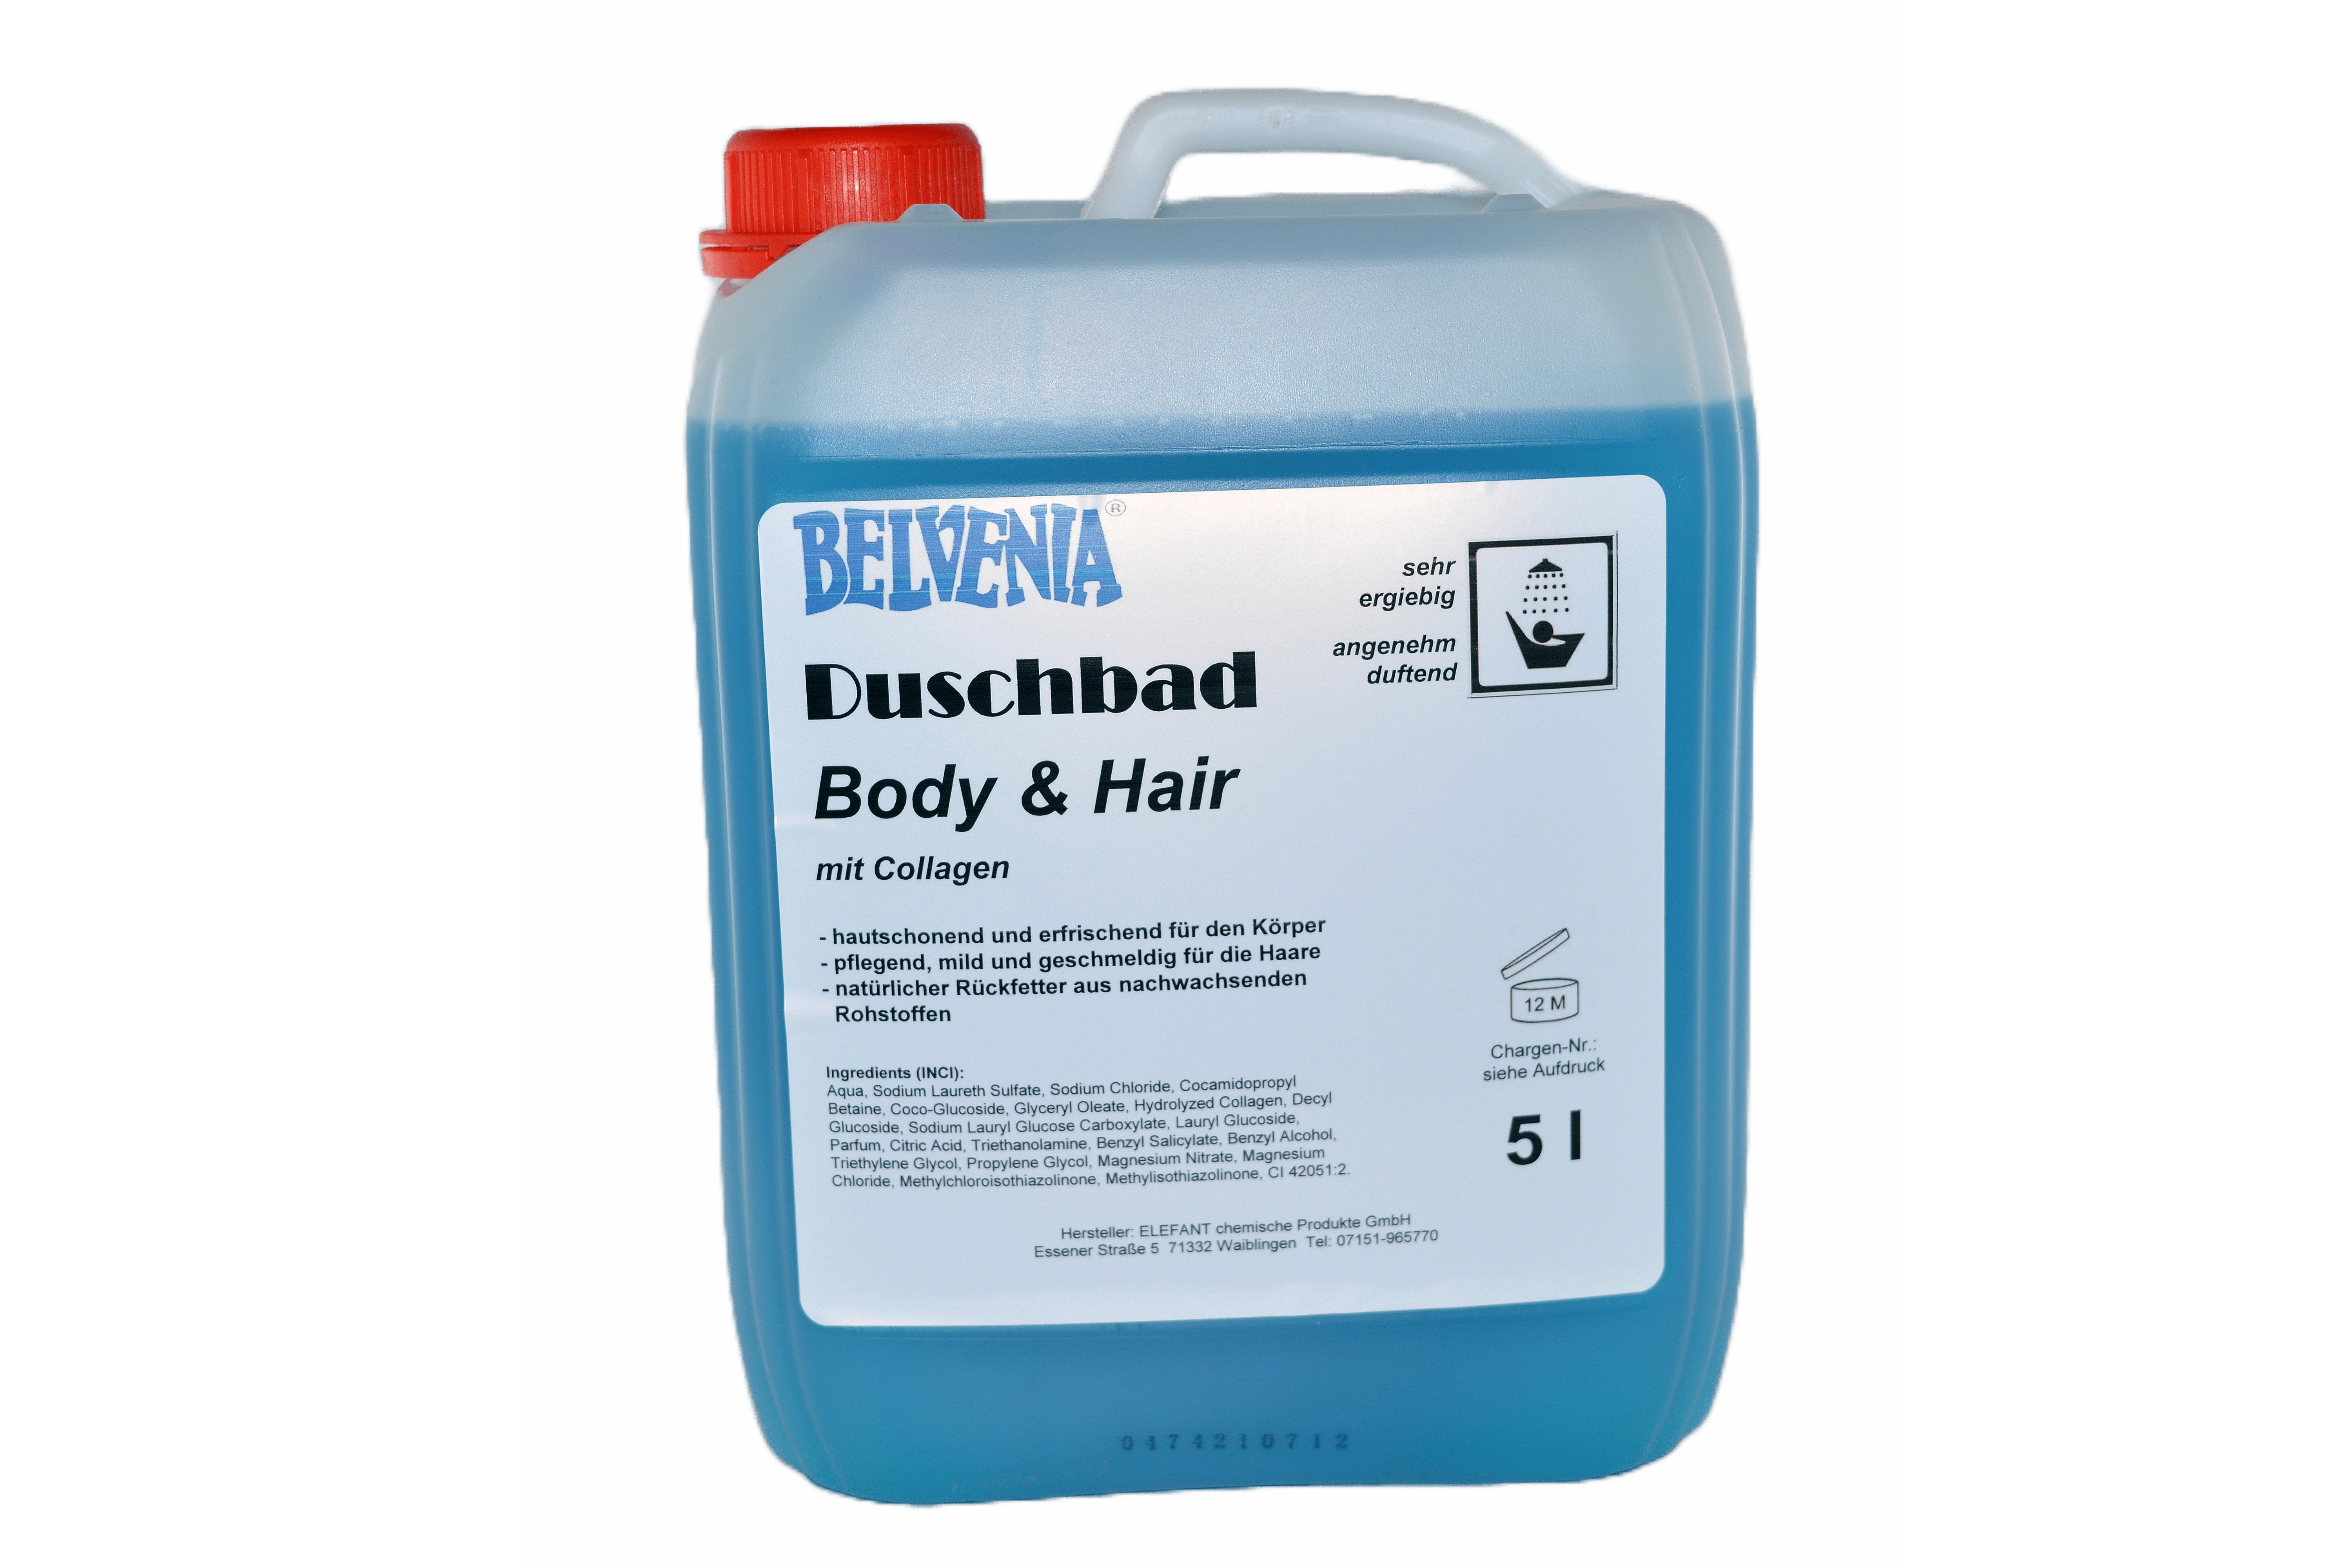 BELVENIA-Duschbad Body & Hair mit Collagen 5 Liter Kanister